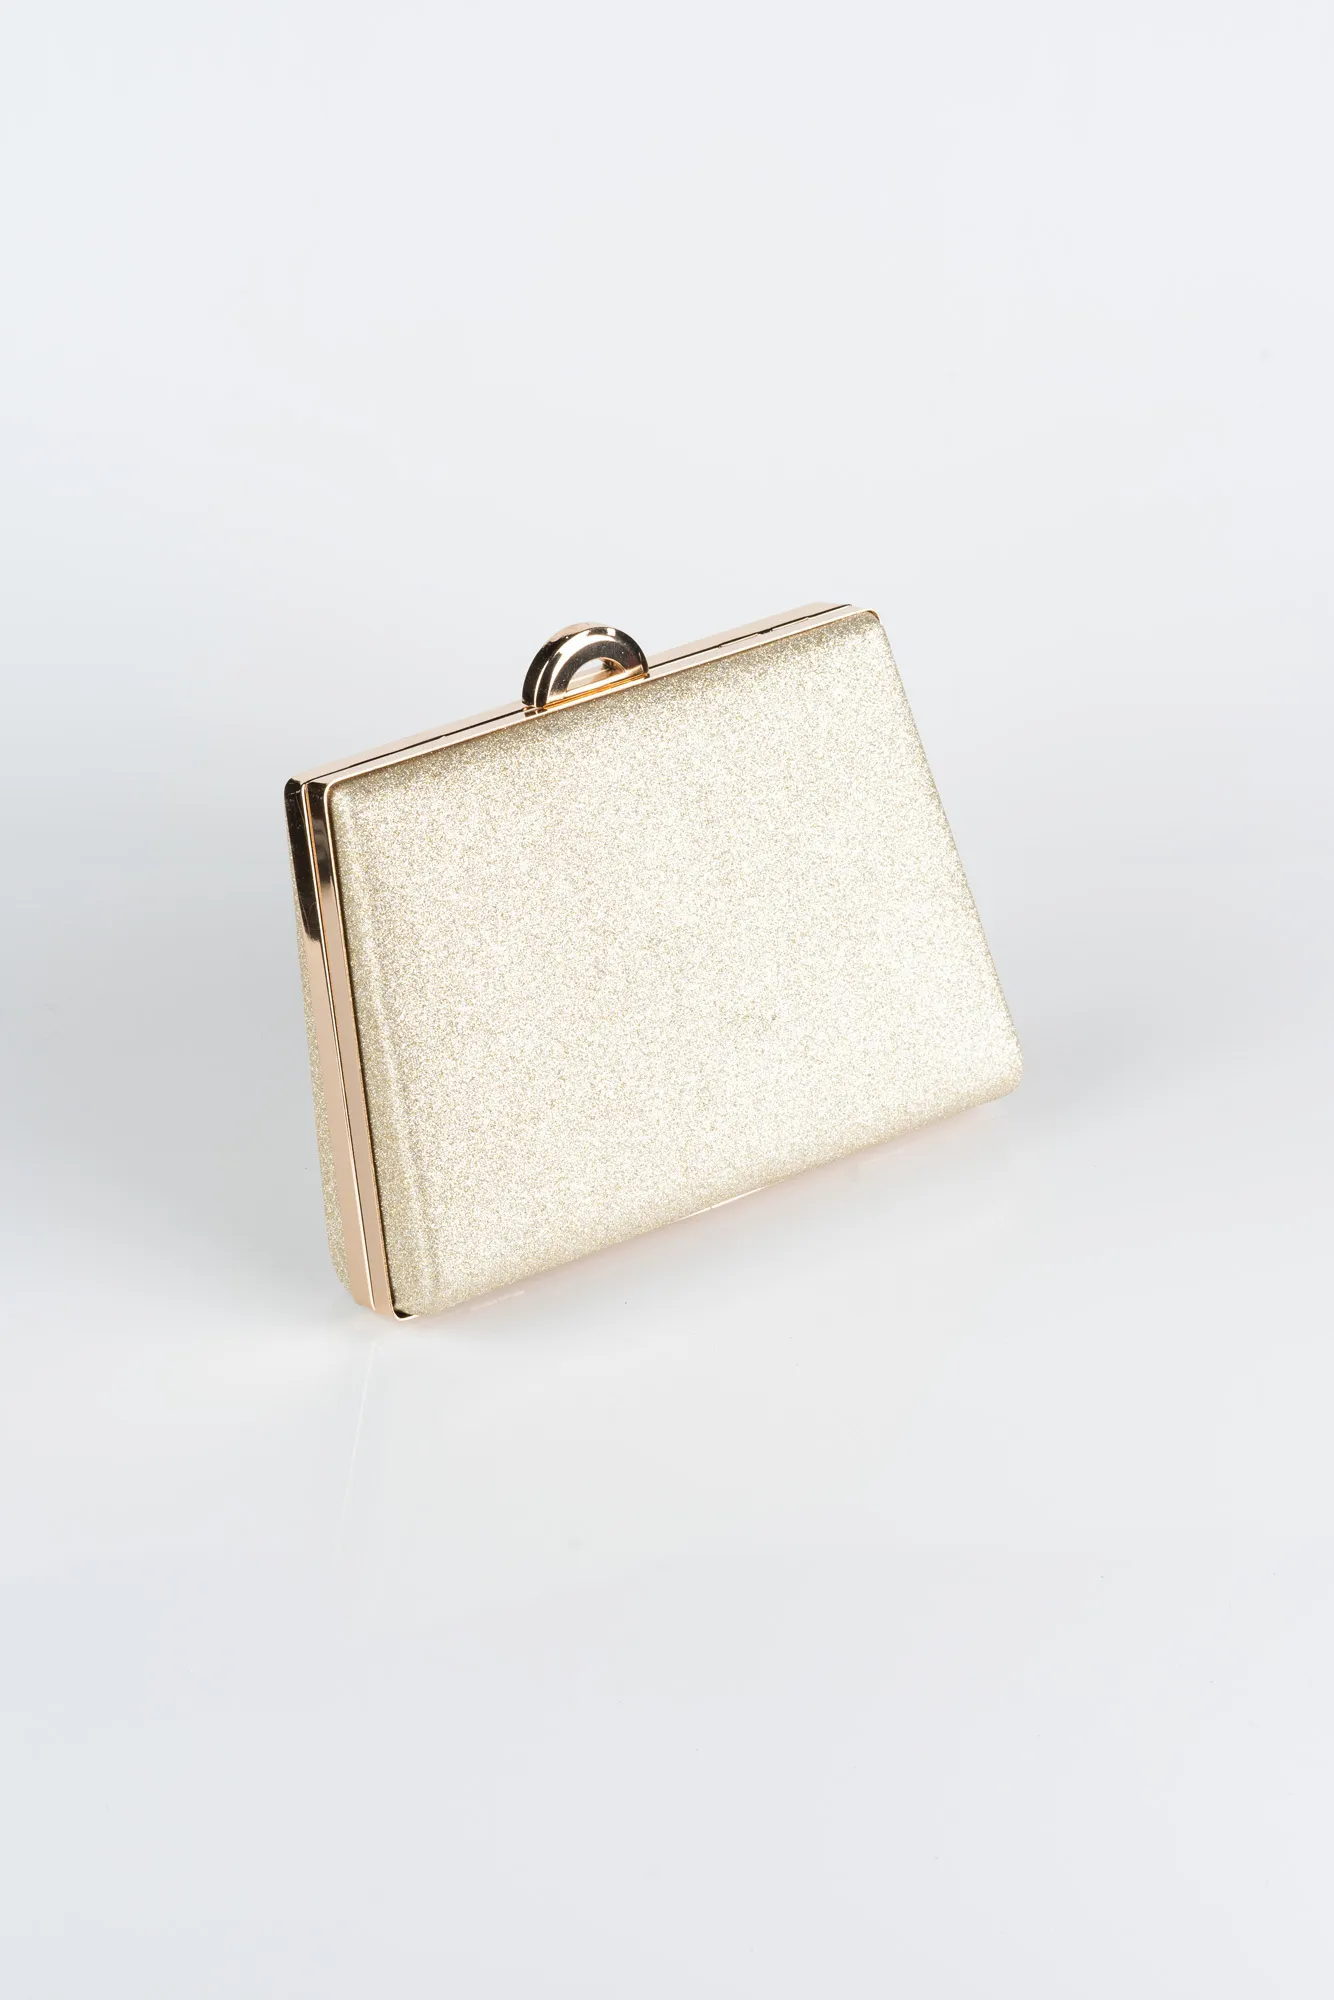 Light Gold-Box Bag V249